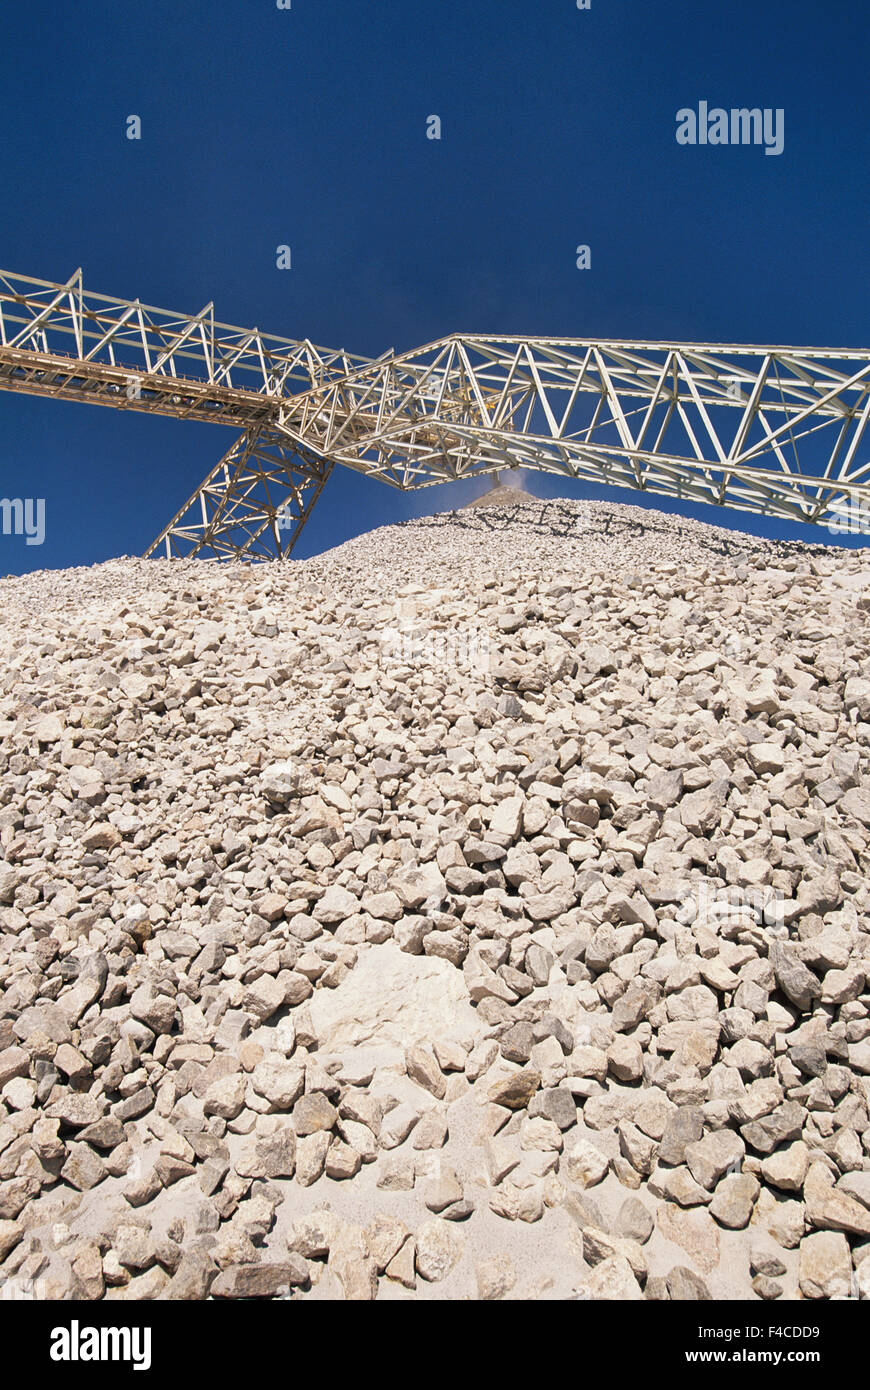 Namibia. World's largest open-pit uranium mine. (Large format sizes available) Stock Photo